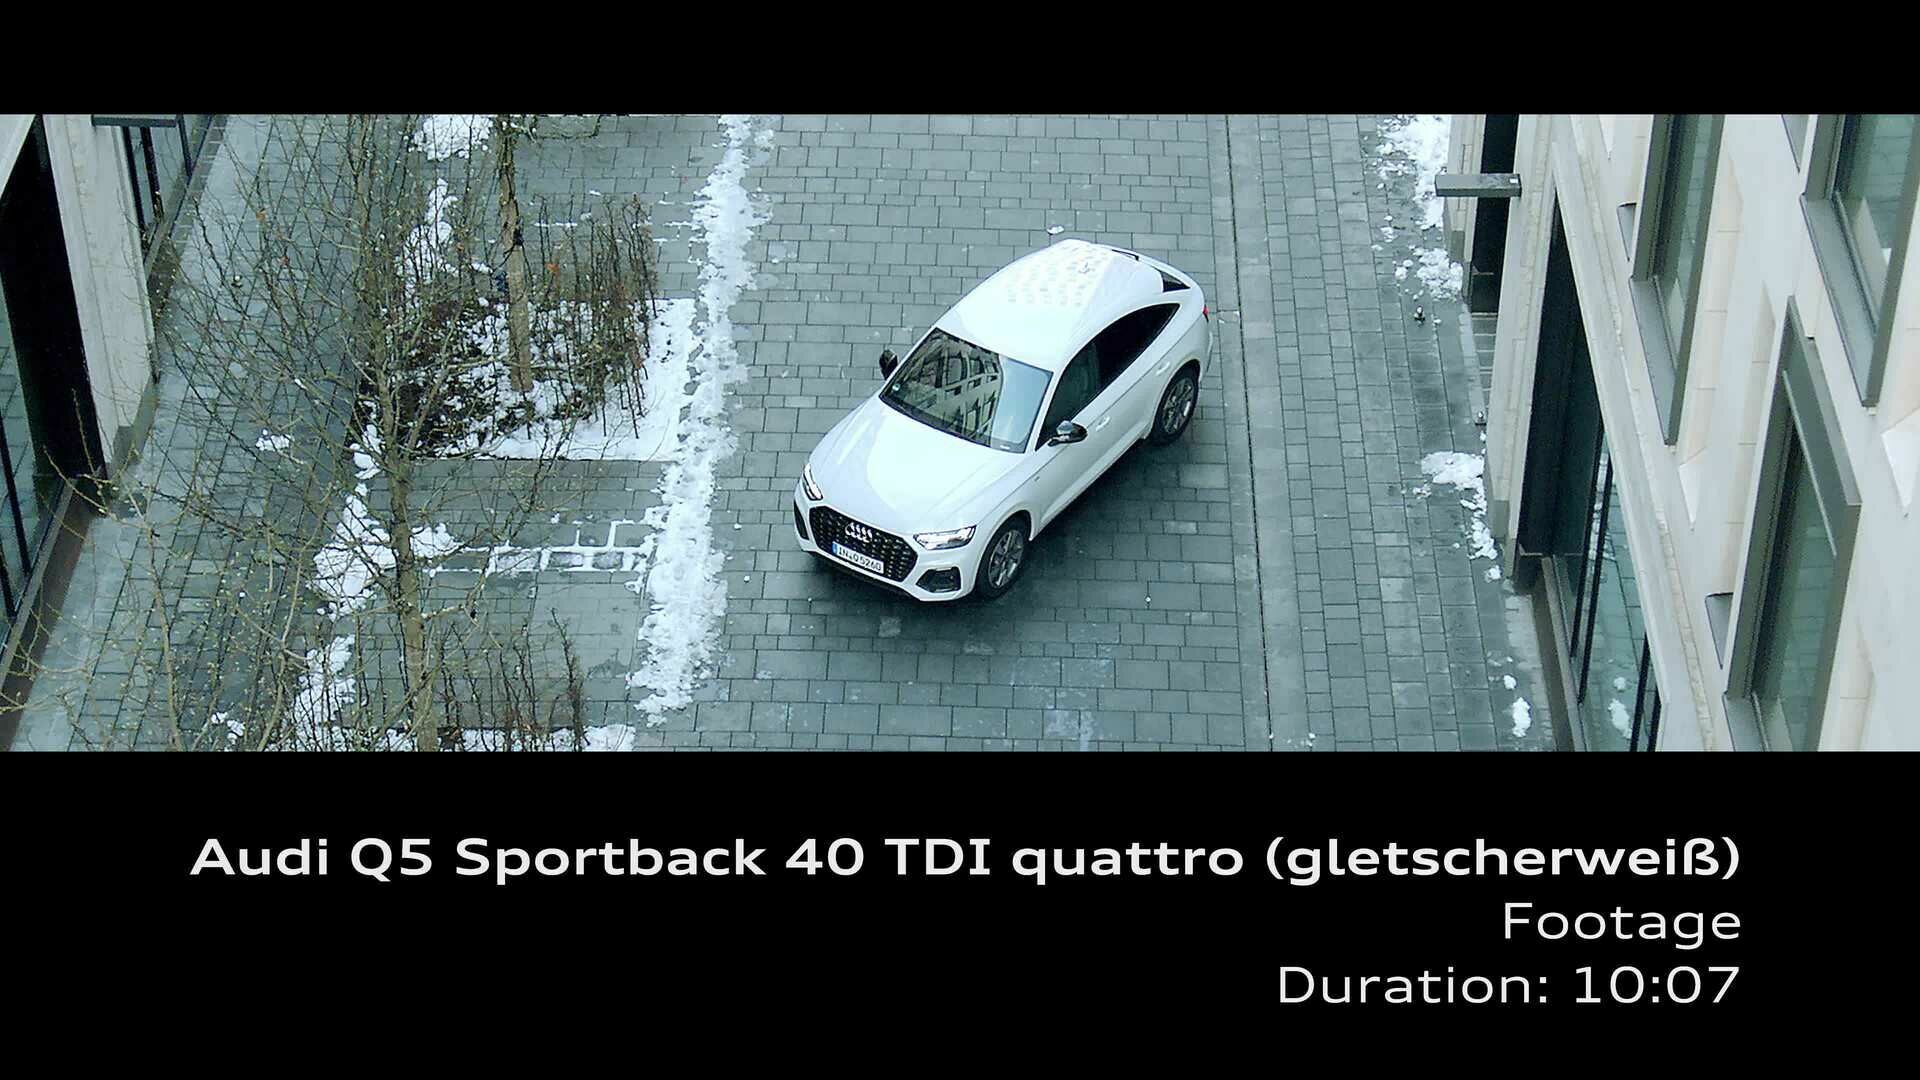 Footage Audi Q5 Sportback 40 TDI quattro (Gletscherweiß)